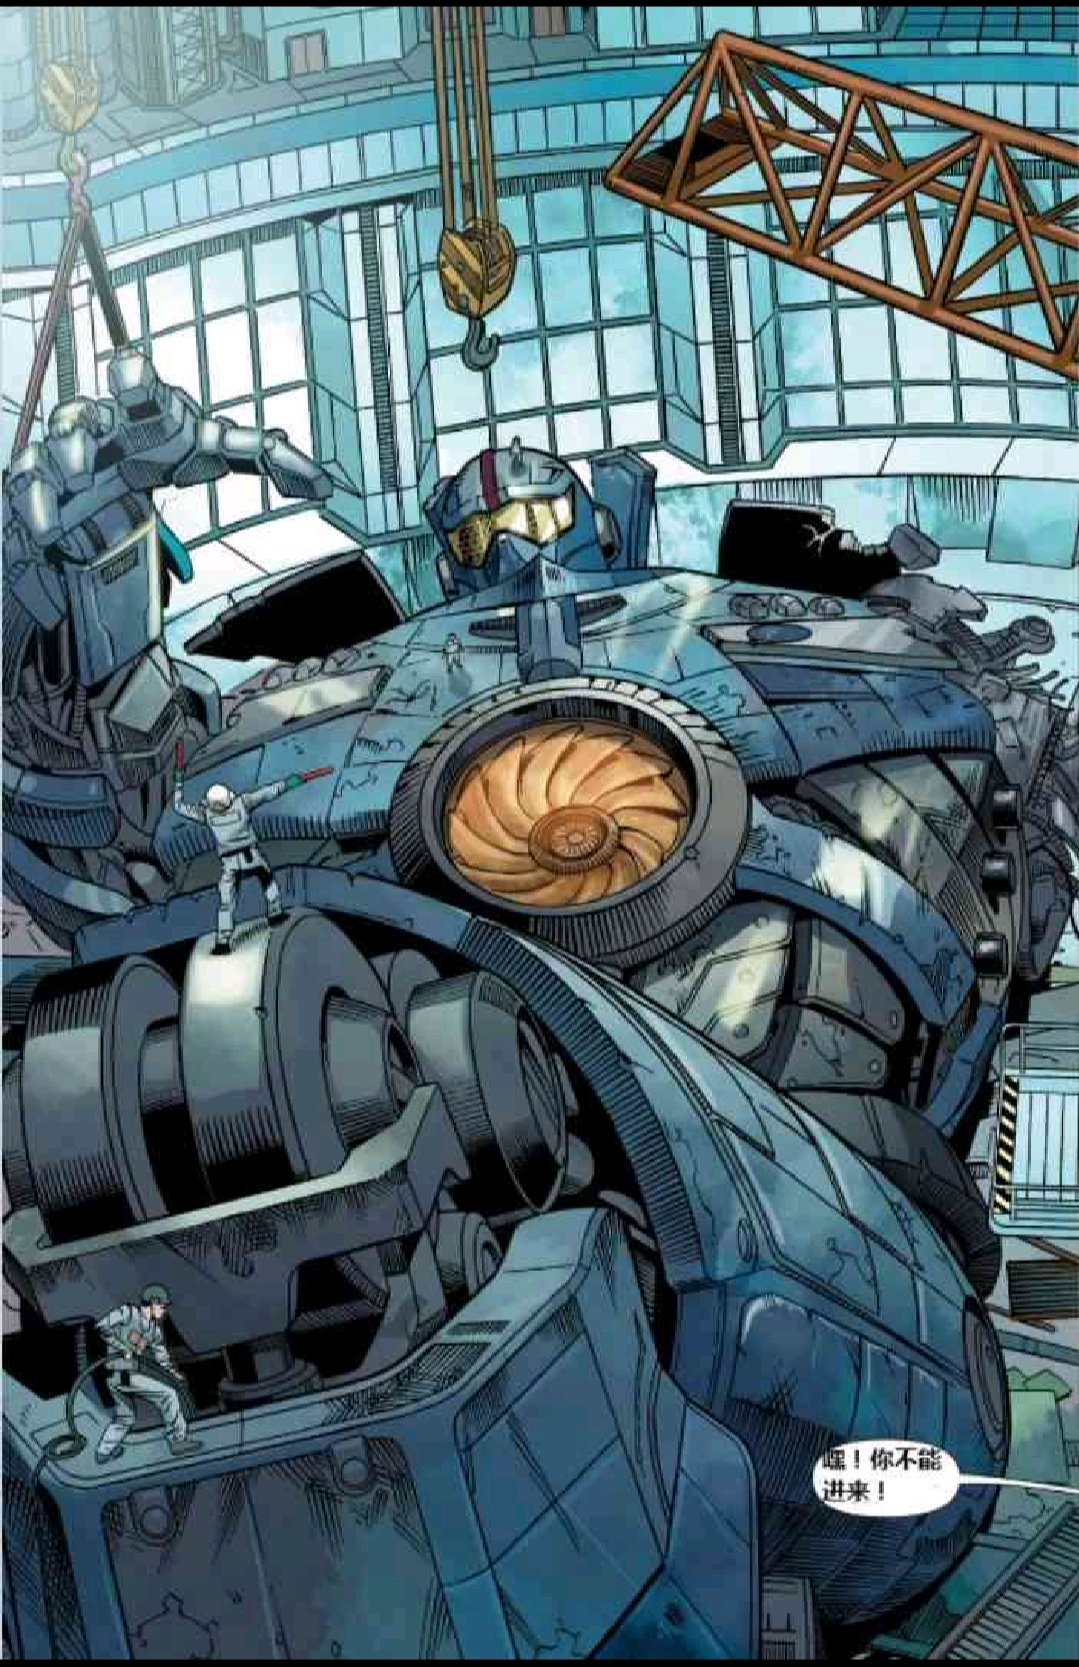 地平线勇士是2013年推出的美国科幻作品《环太平洋》系列中的一台"